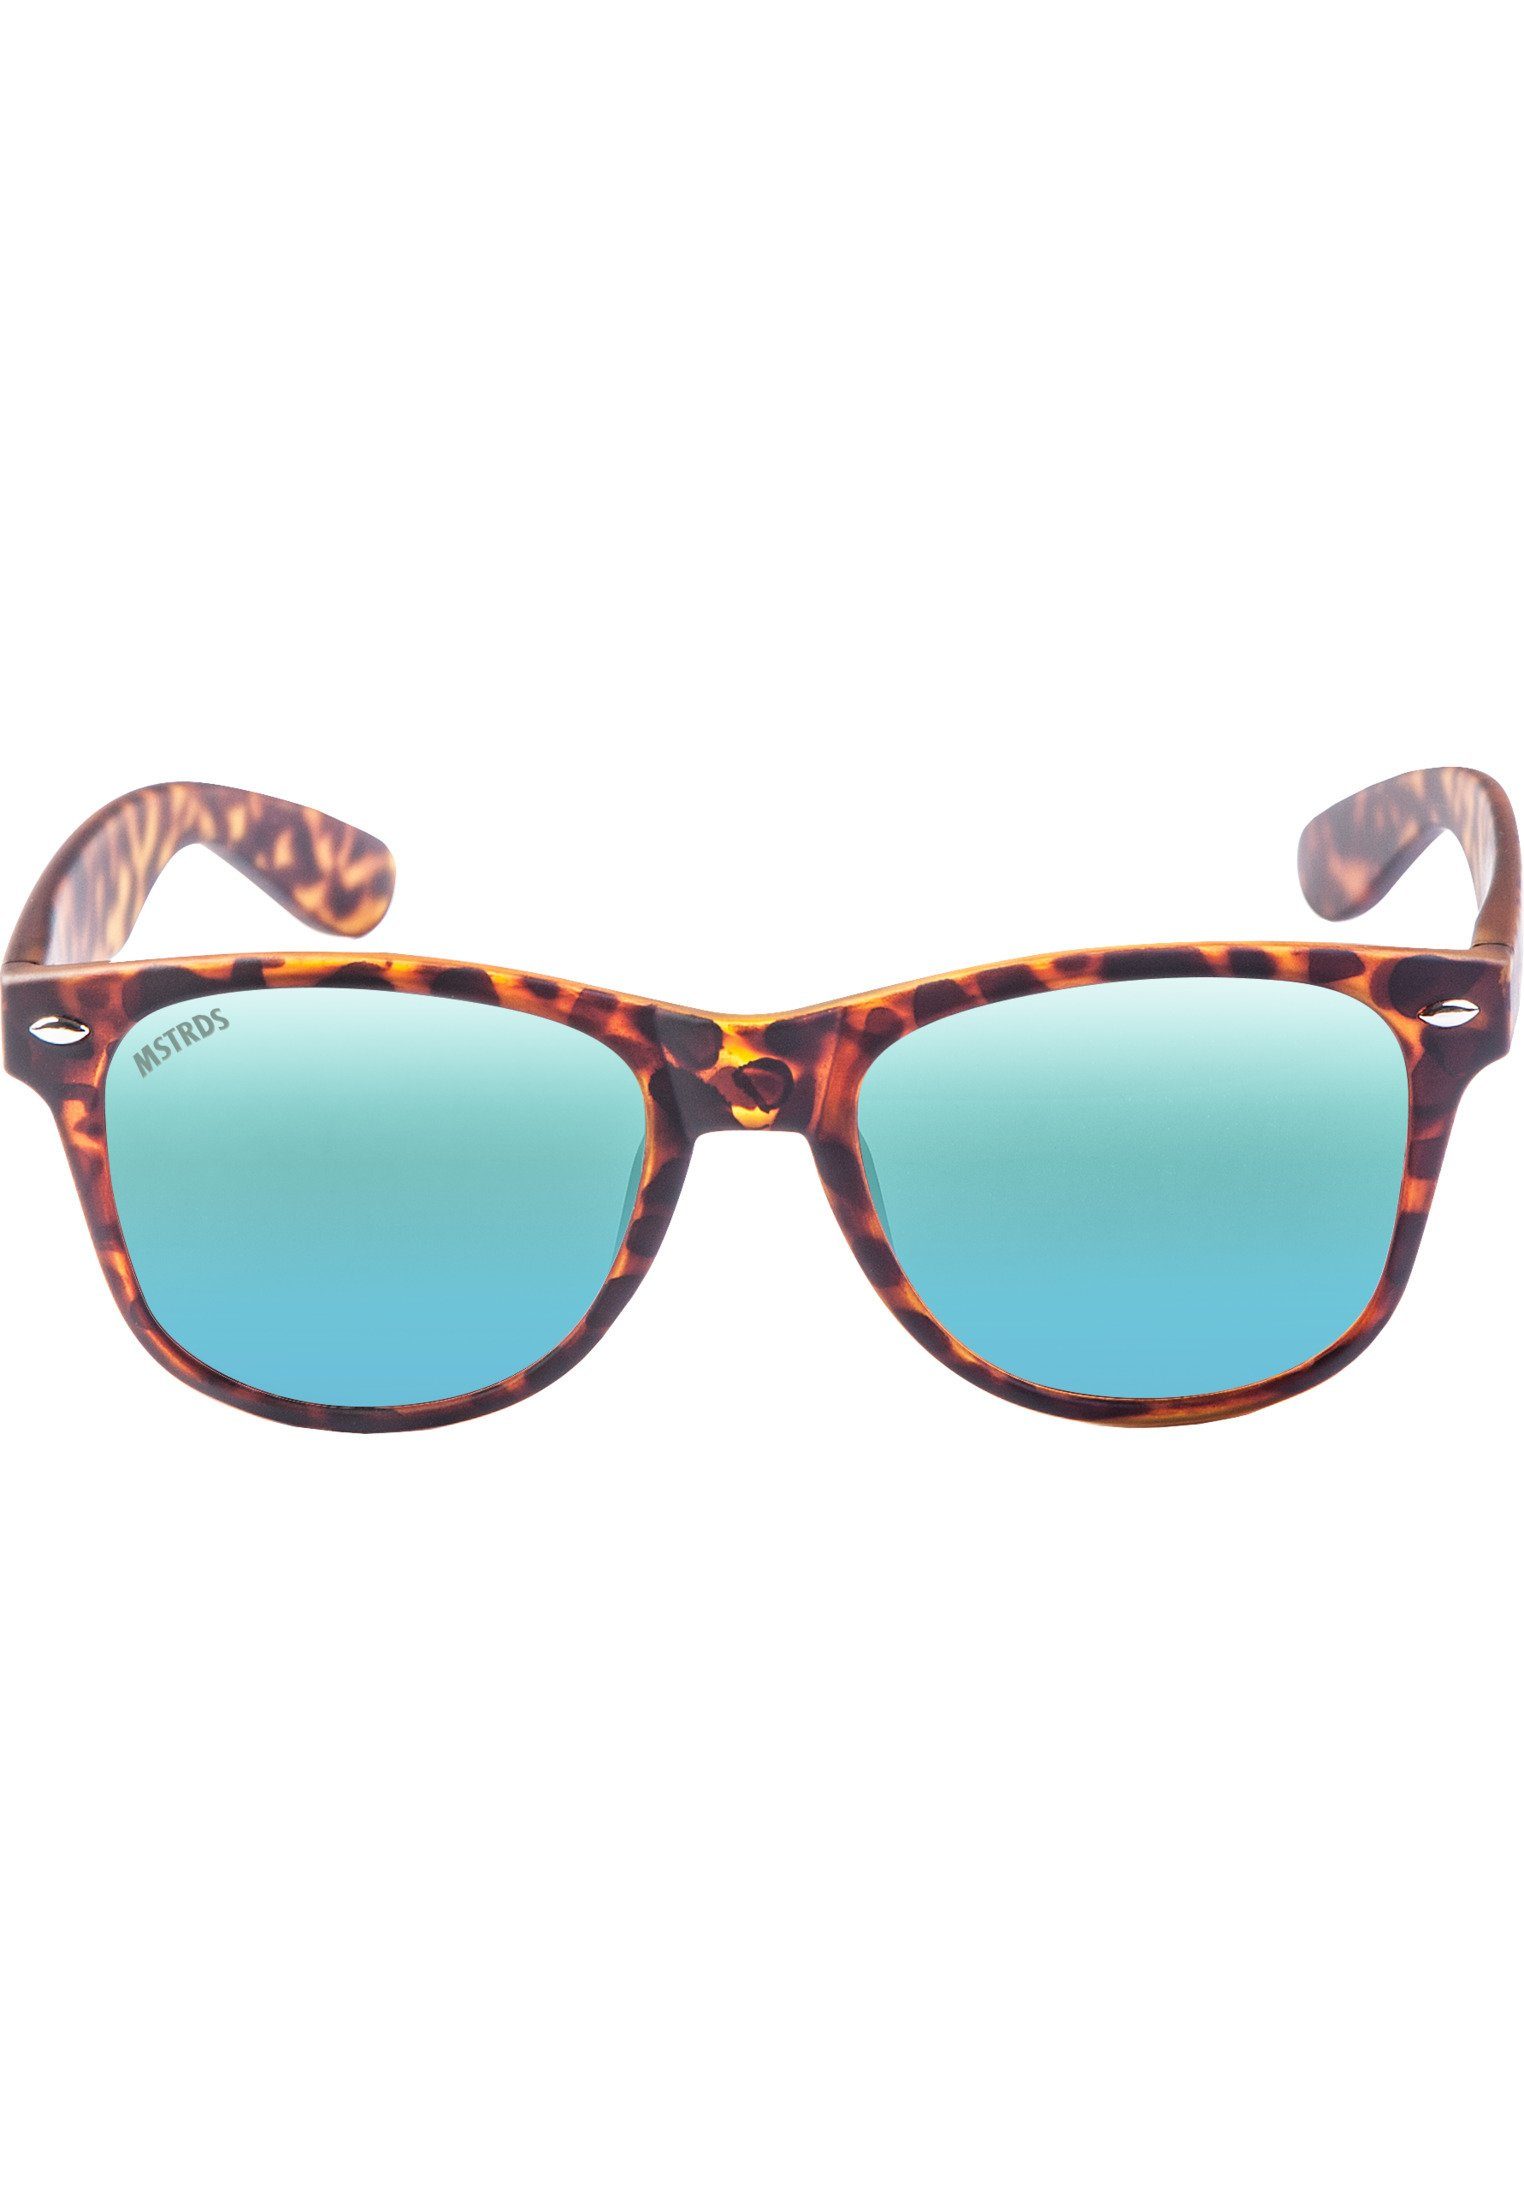 MSTRDS Sonnenbrille Accessoires Sunglasses Likoma Youth, Ideal auch für  Sport im Freien geeignet | Sonnenbrillen